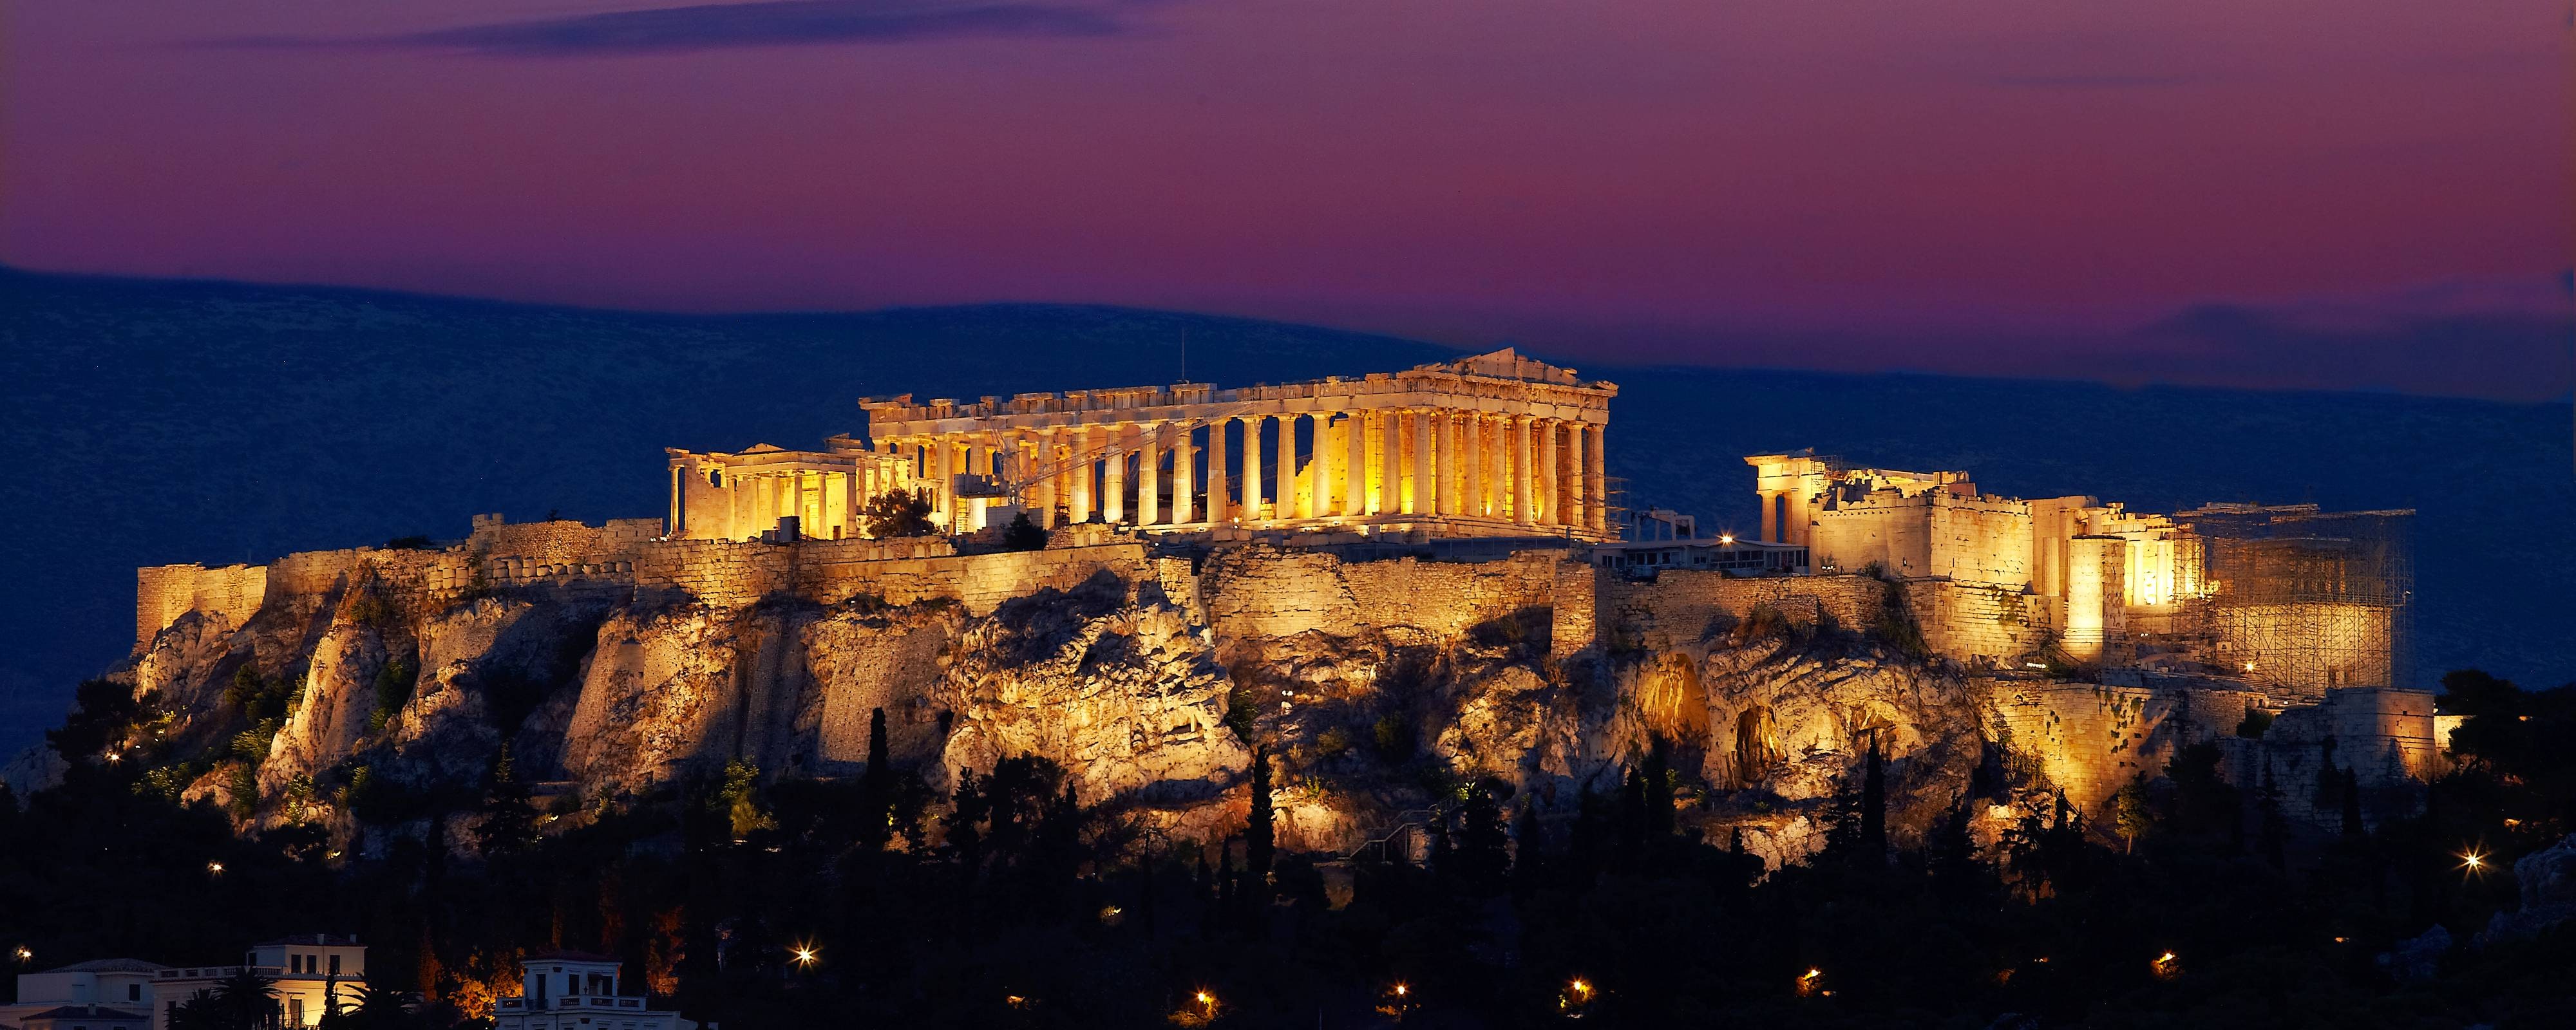 Афин слушать. Афинский Акрополь 4к. Акрополь Италия. Греция Афины туризм. Греция Афины часовой.